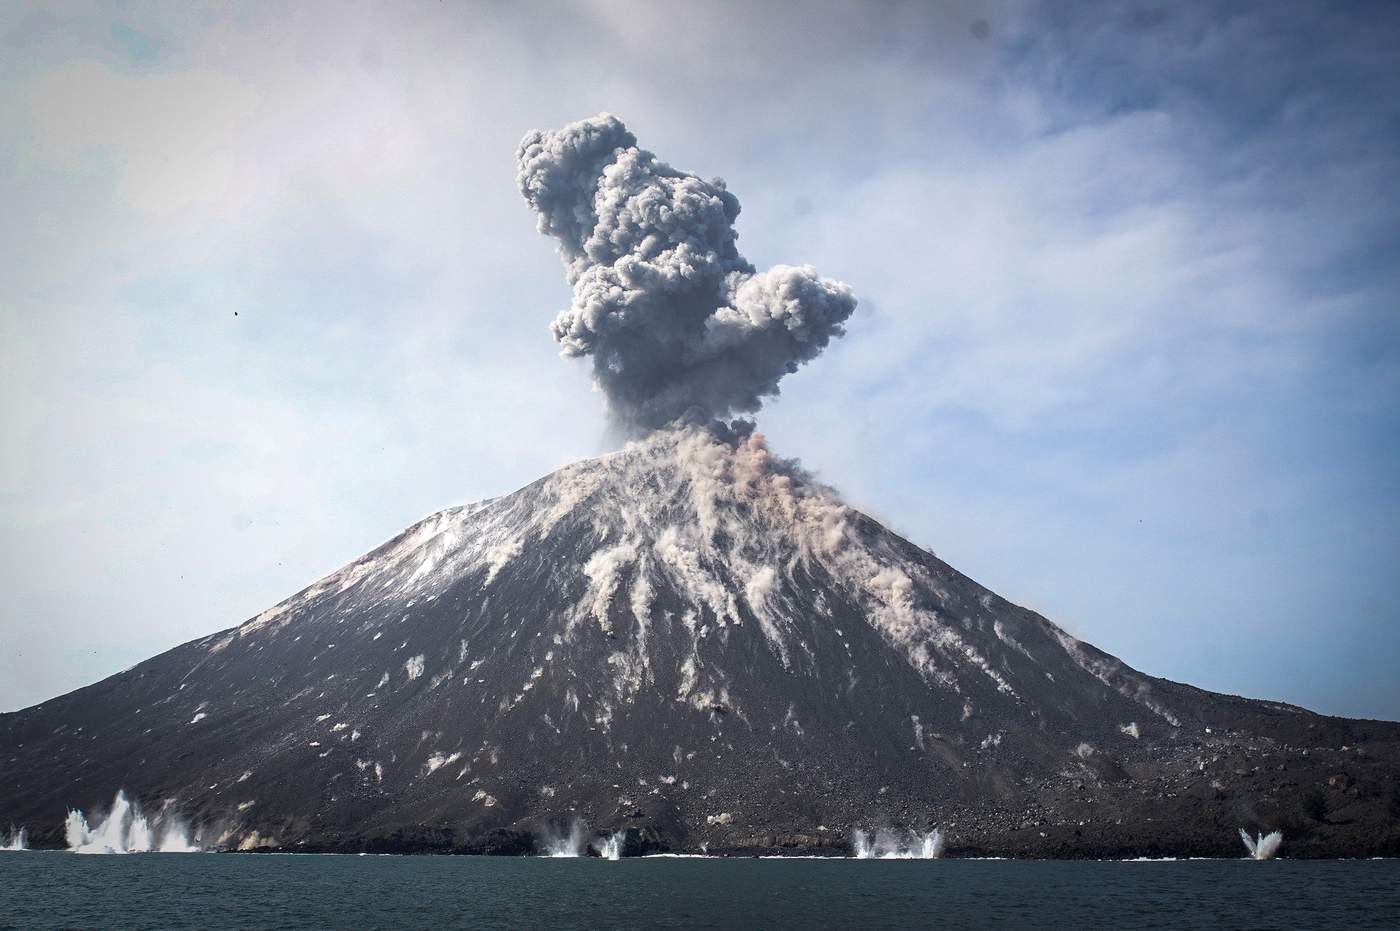 La dependencia precisó que la erupción duró alrededor de un minuto, por lo que el estado de alerta se mantiene en el tercer nivel de una escala de cuatro. (ARCHIVO)